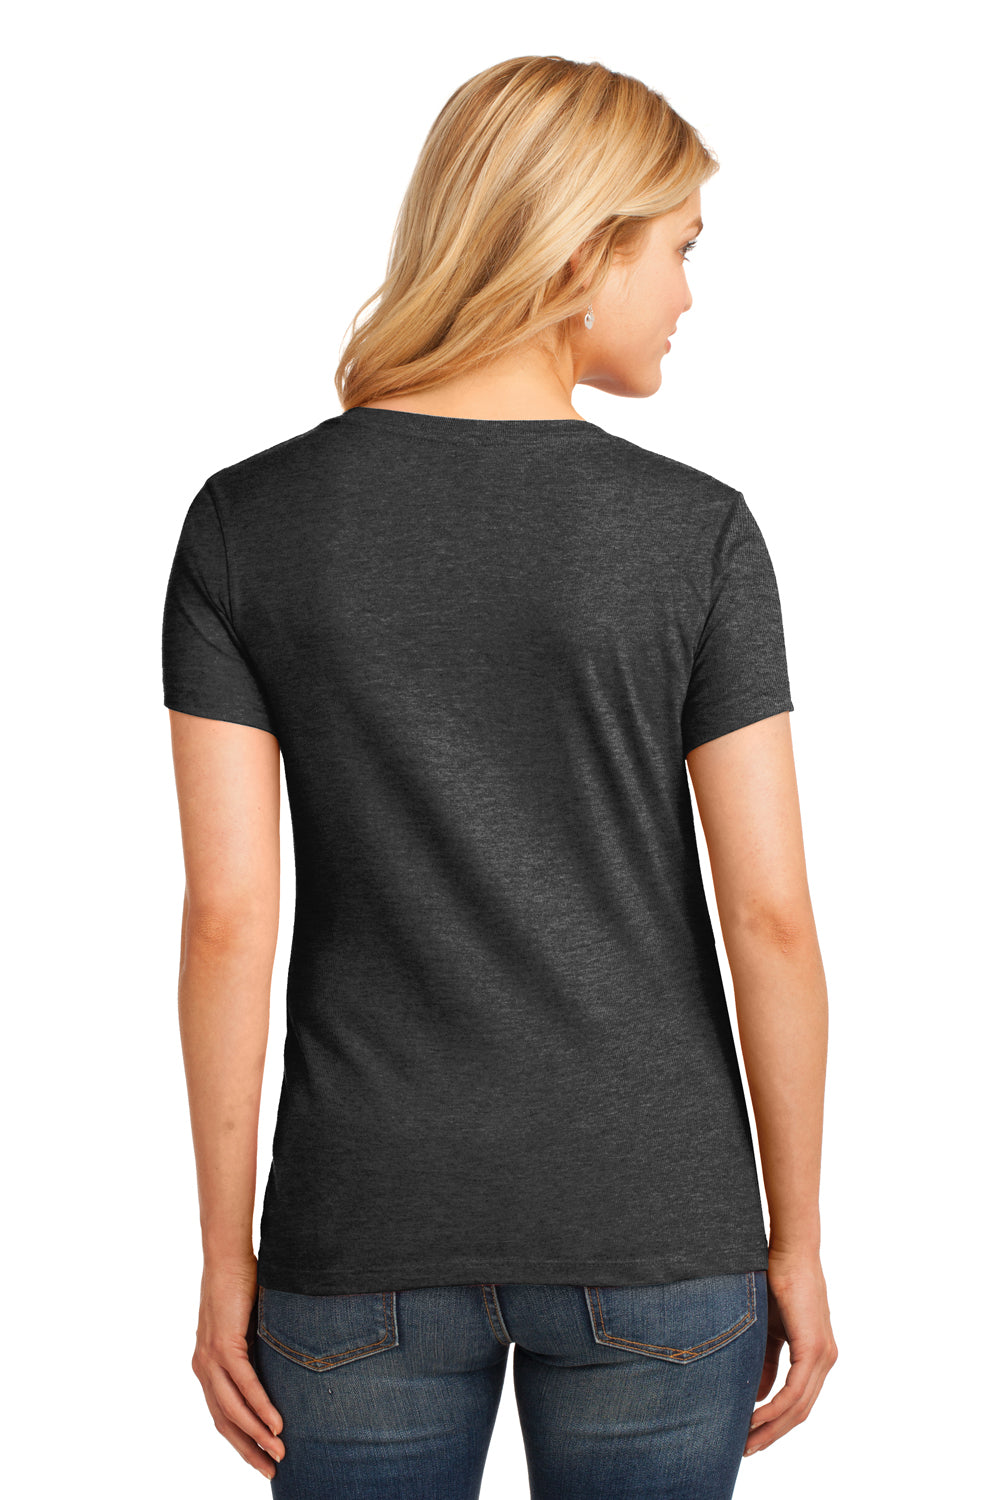 Port & Company LPC54V Womens Core Short Sleeve V-Neck T-Shirt Heather Dark Grey Back